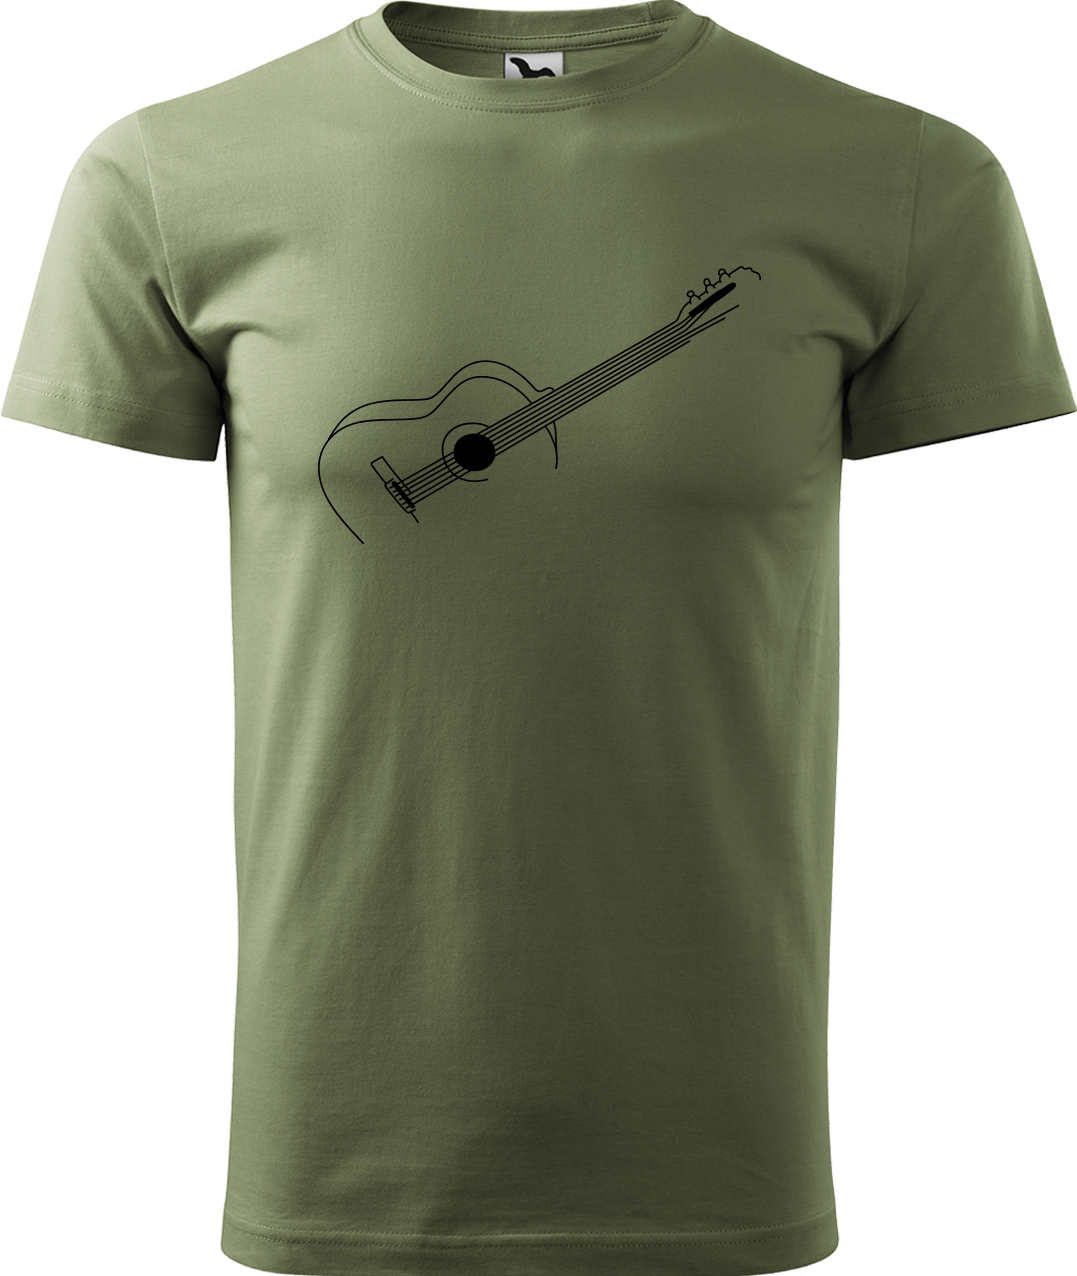 Pánské tričko s kytarou - Stylizovaná kytara Velikost: 4XL, Barva: Světlá khaki (28), Střih: pánský